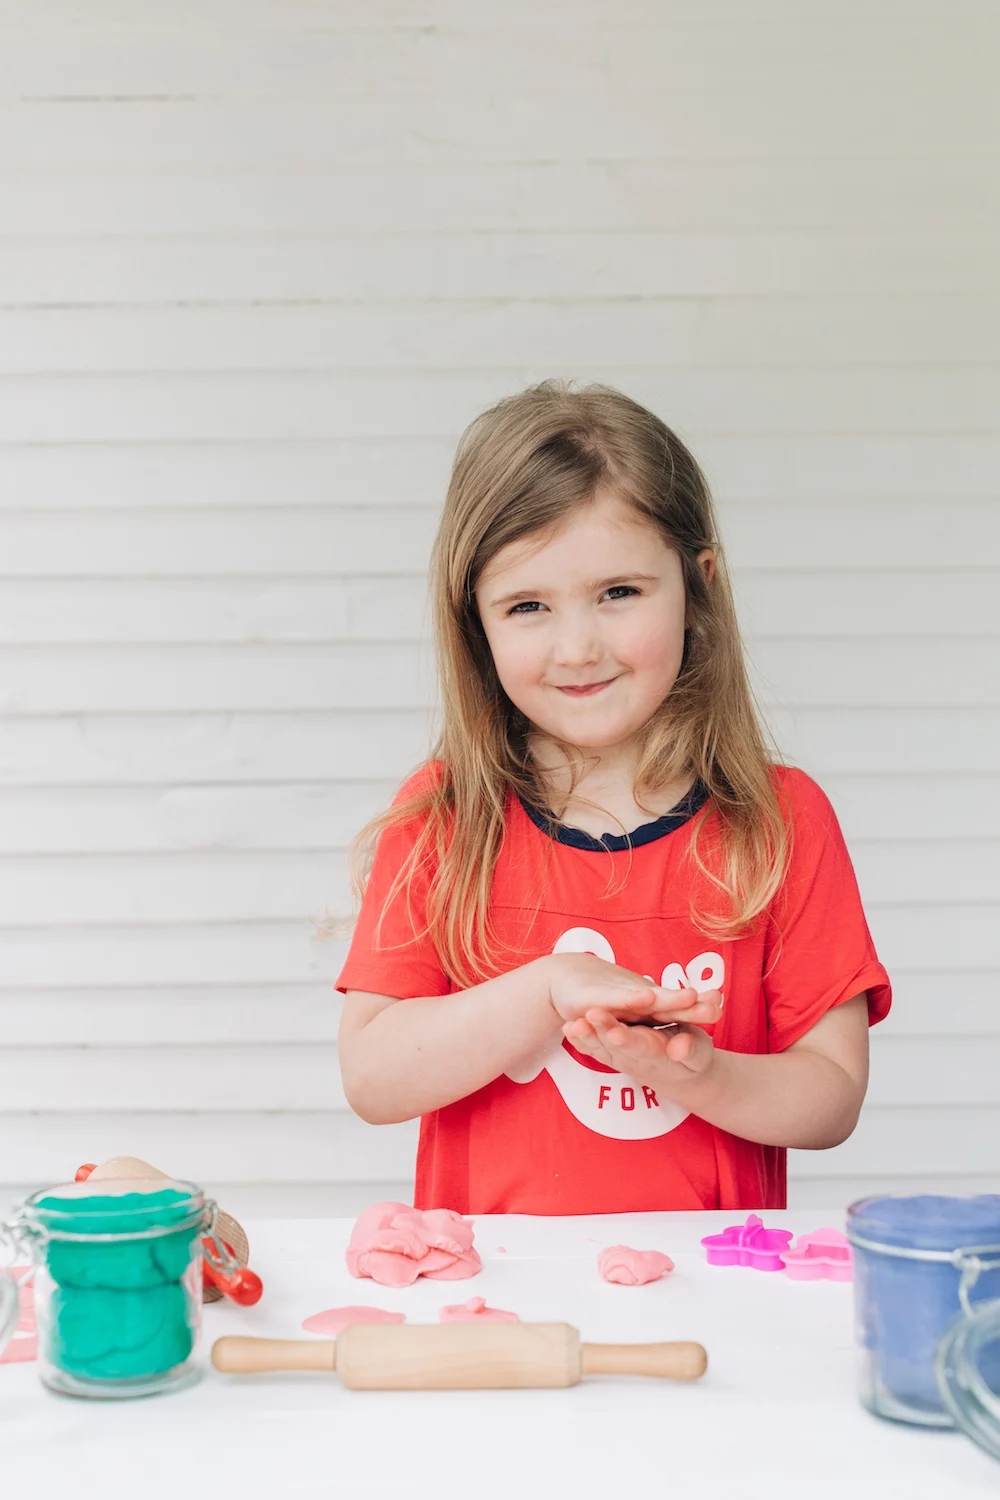 Easy Homemade Play Dough Recipe for Kids